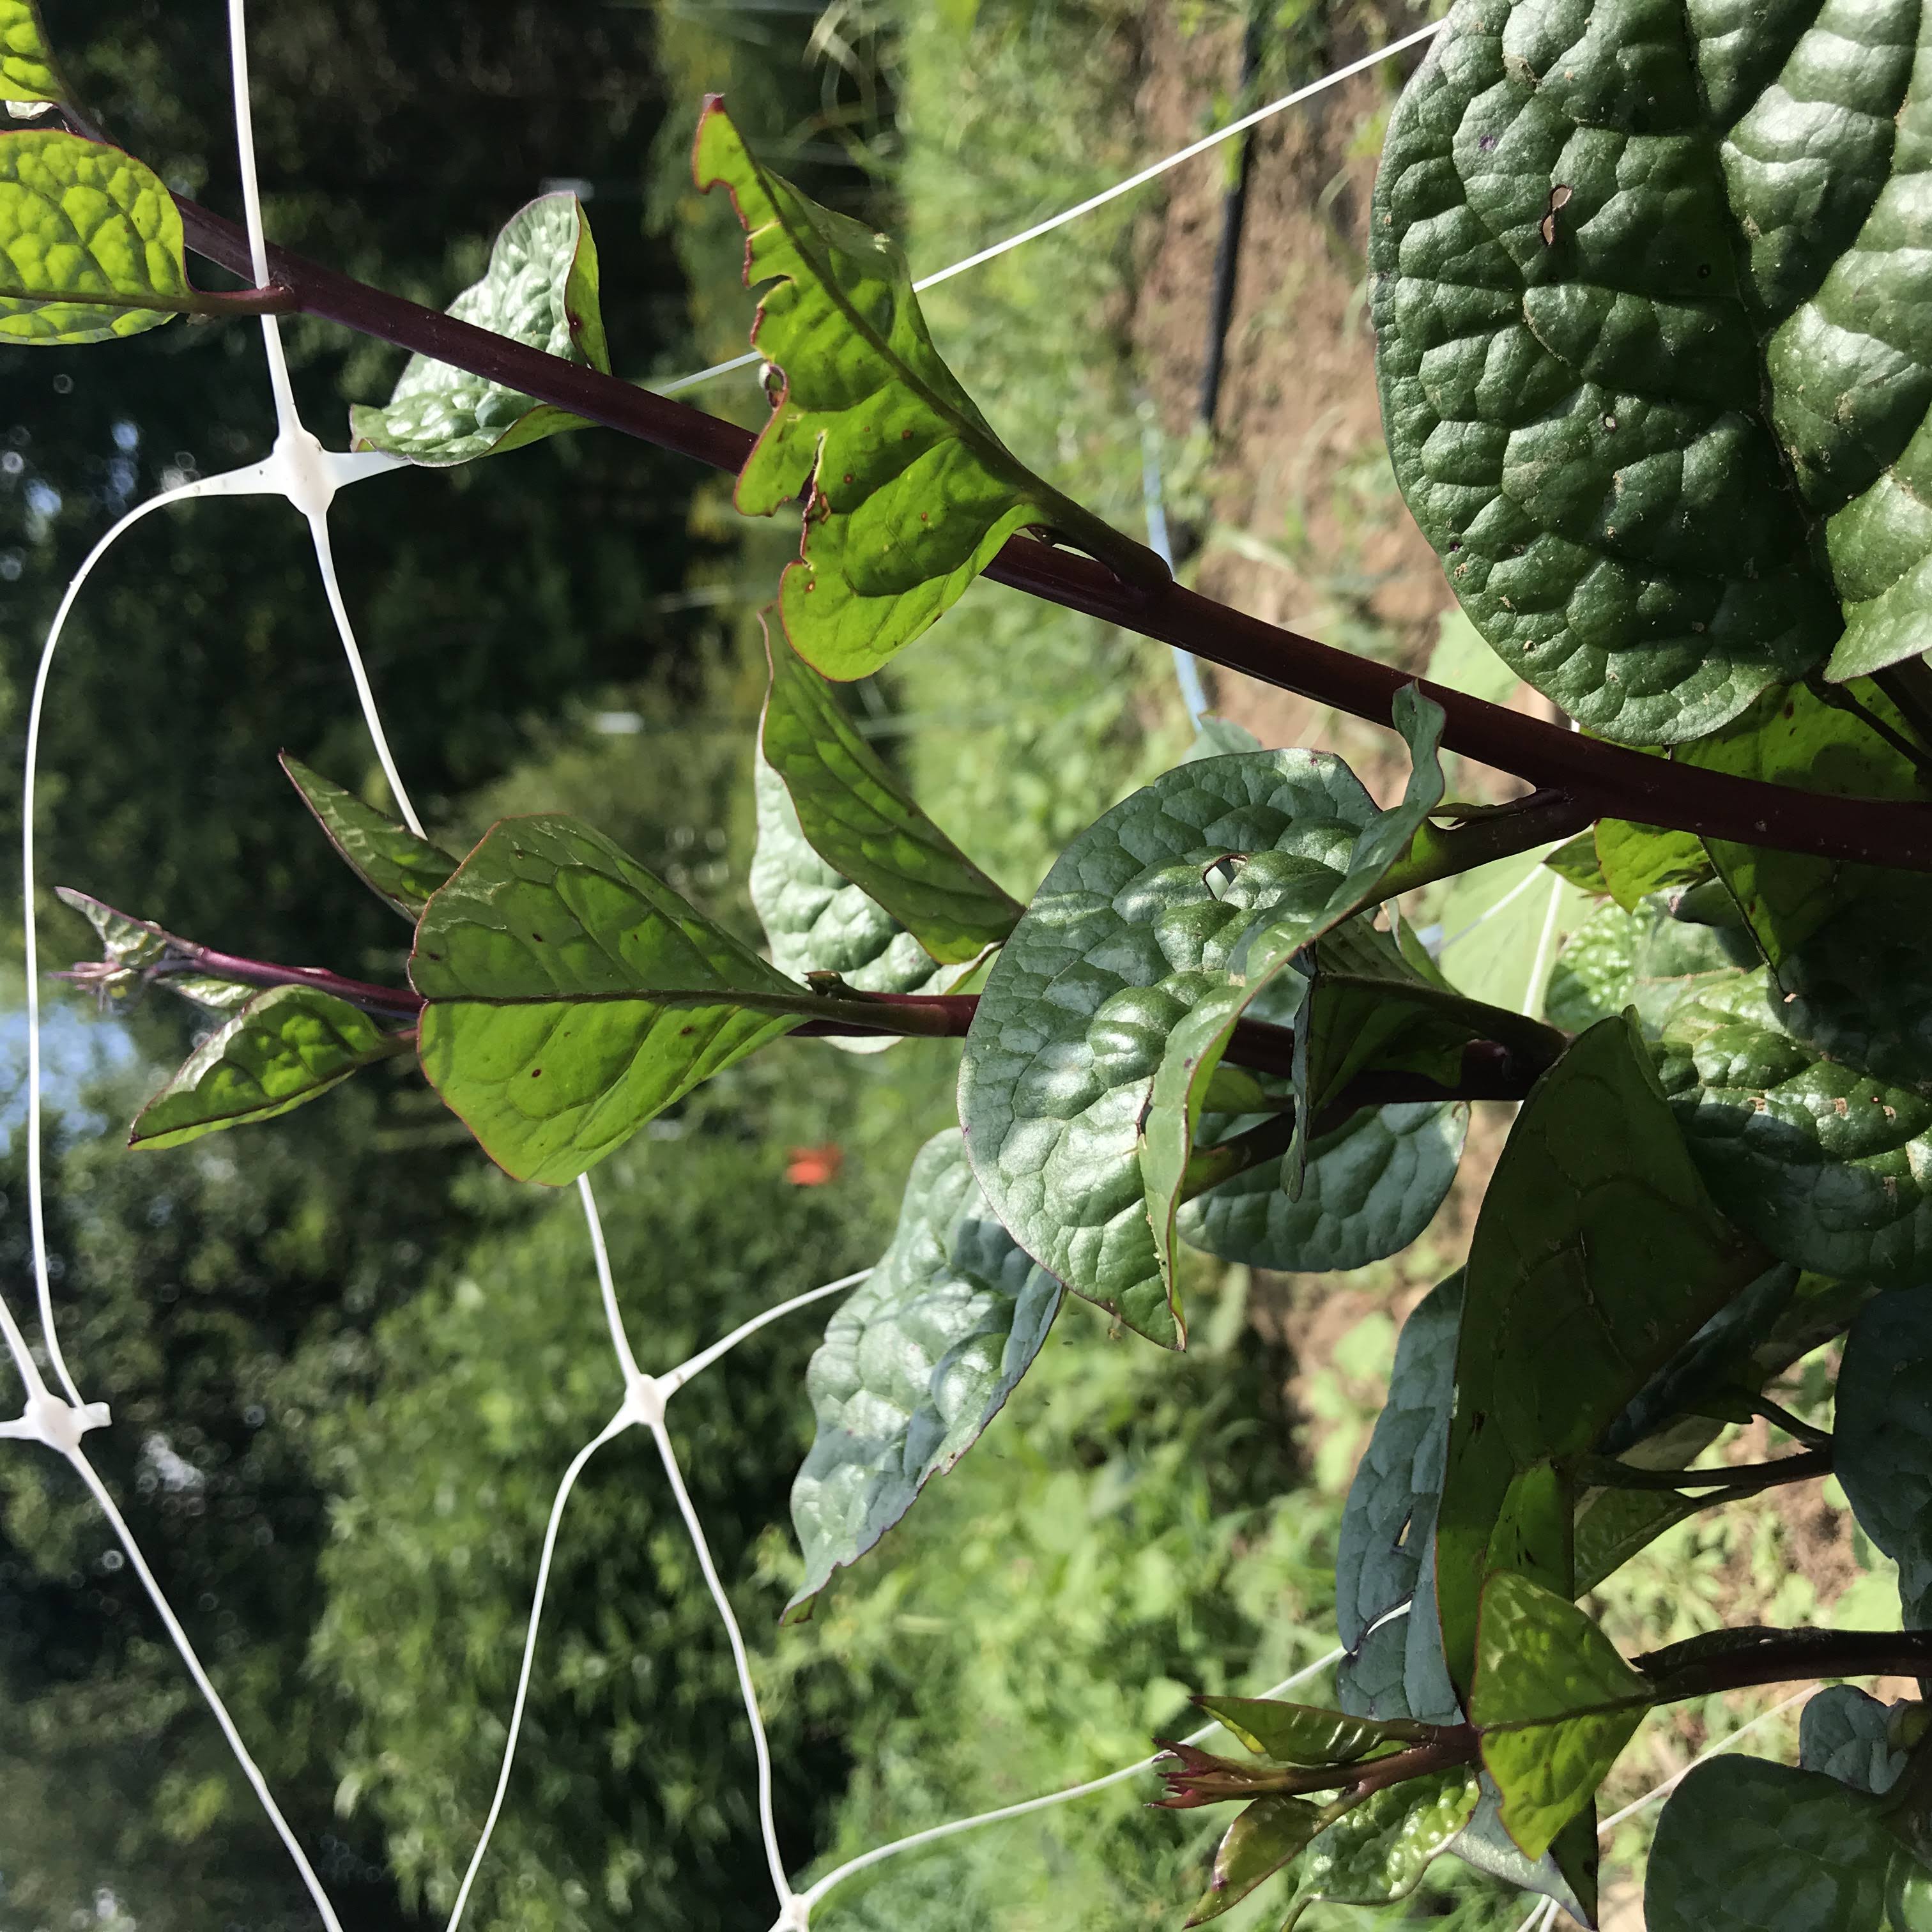 Malabar Red Stem, Spinach Seeds